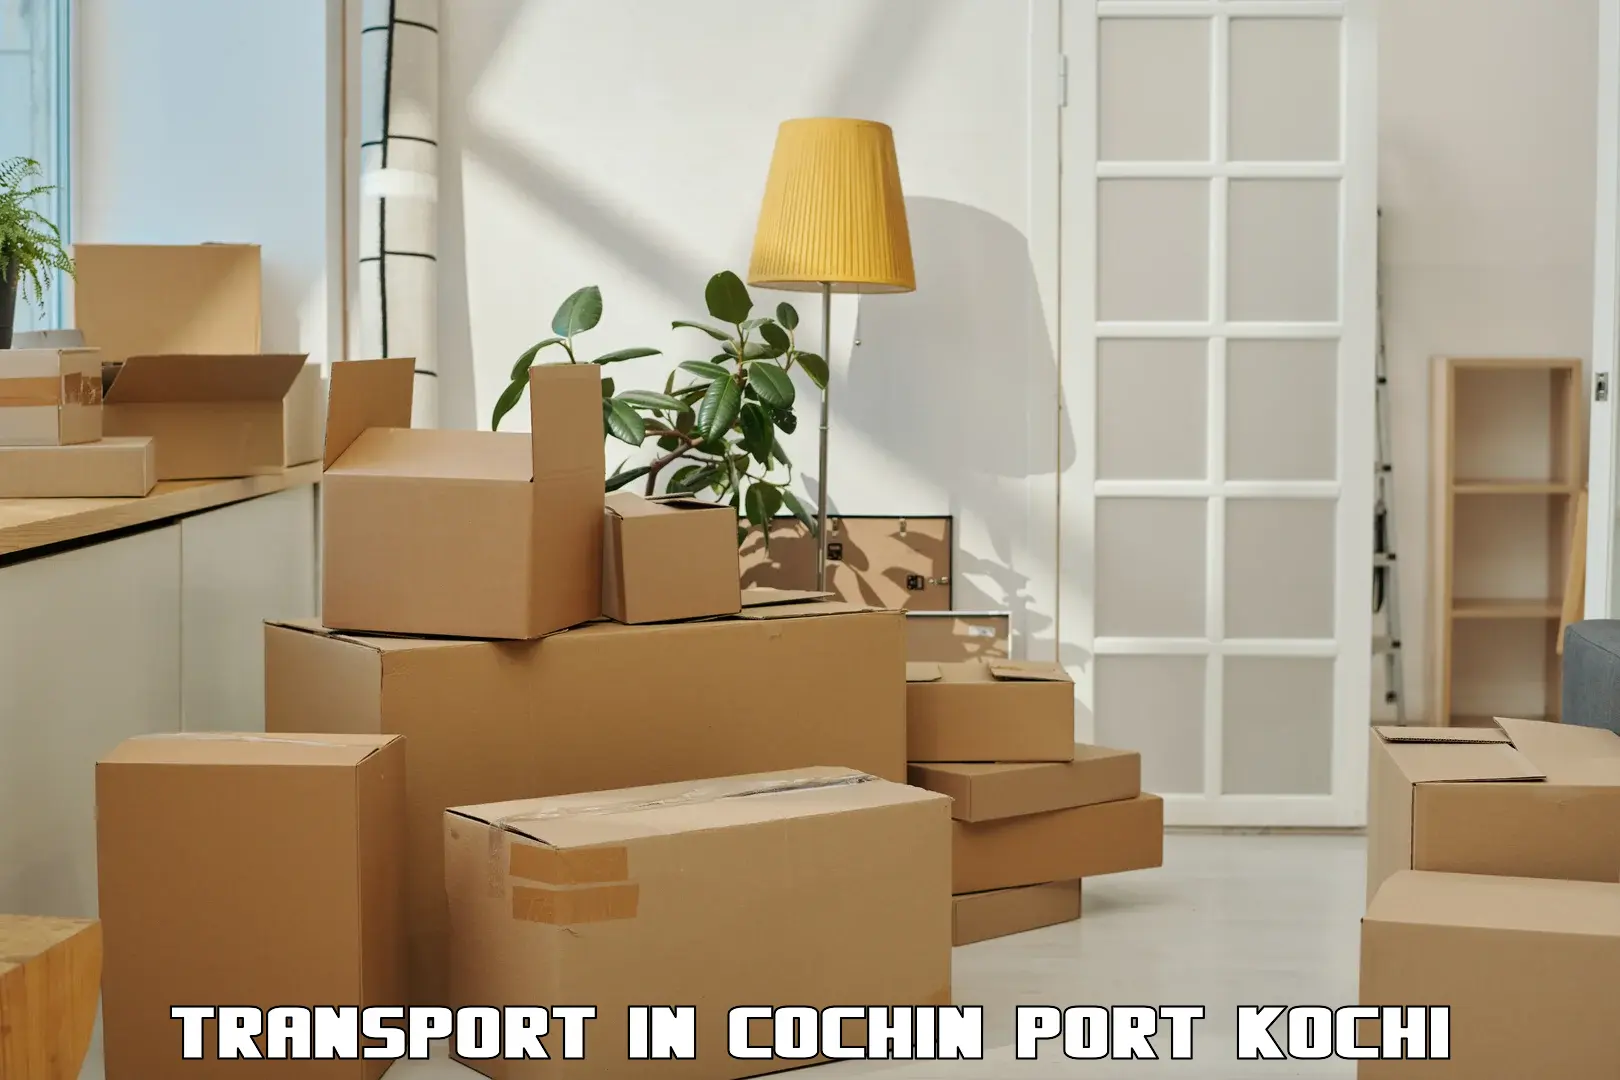 International cargo transportation services in Cochin Port Kochi